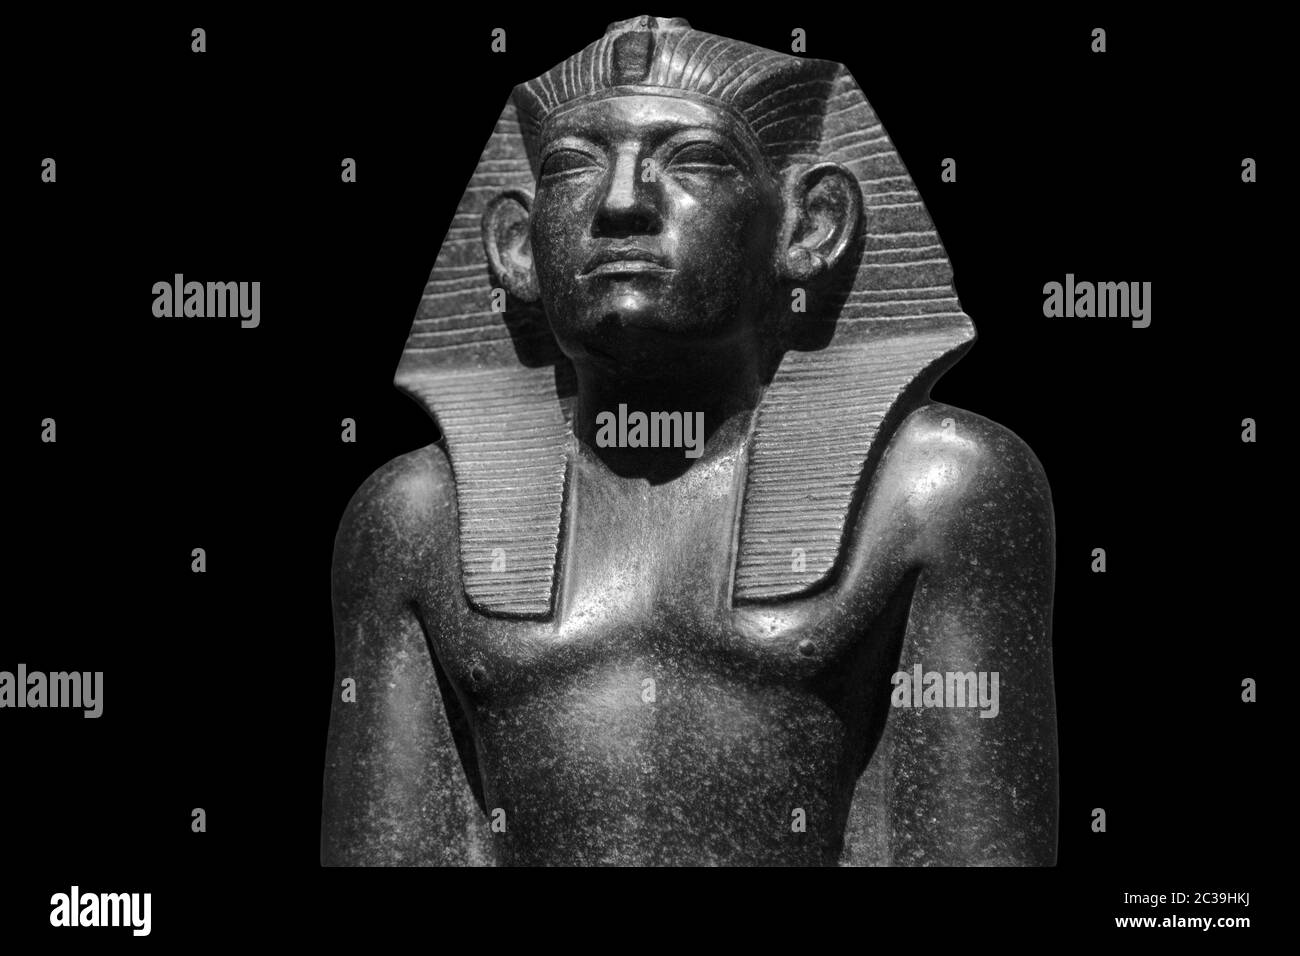 Pharaoh Egyptian gods dead religion symbol stone statue isolated on black. Stone pharaoh tutankhamen mask on black background Stock Photo